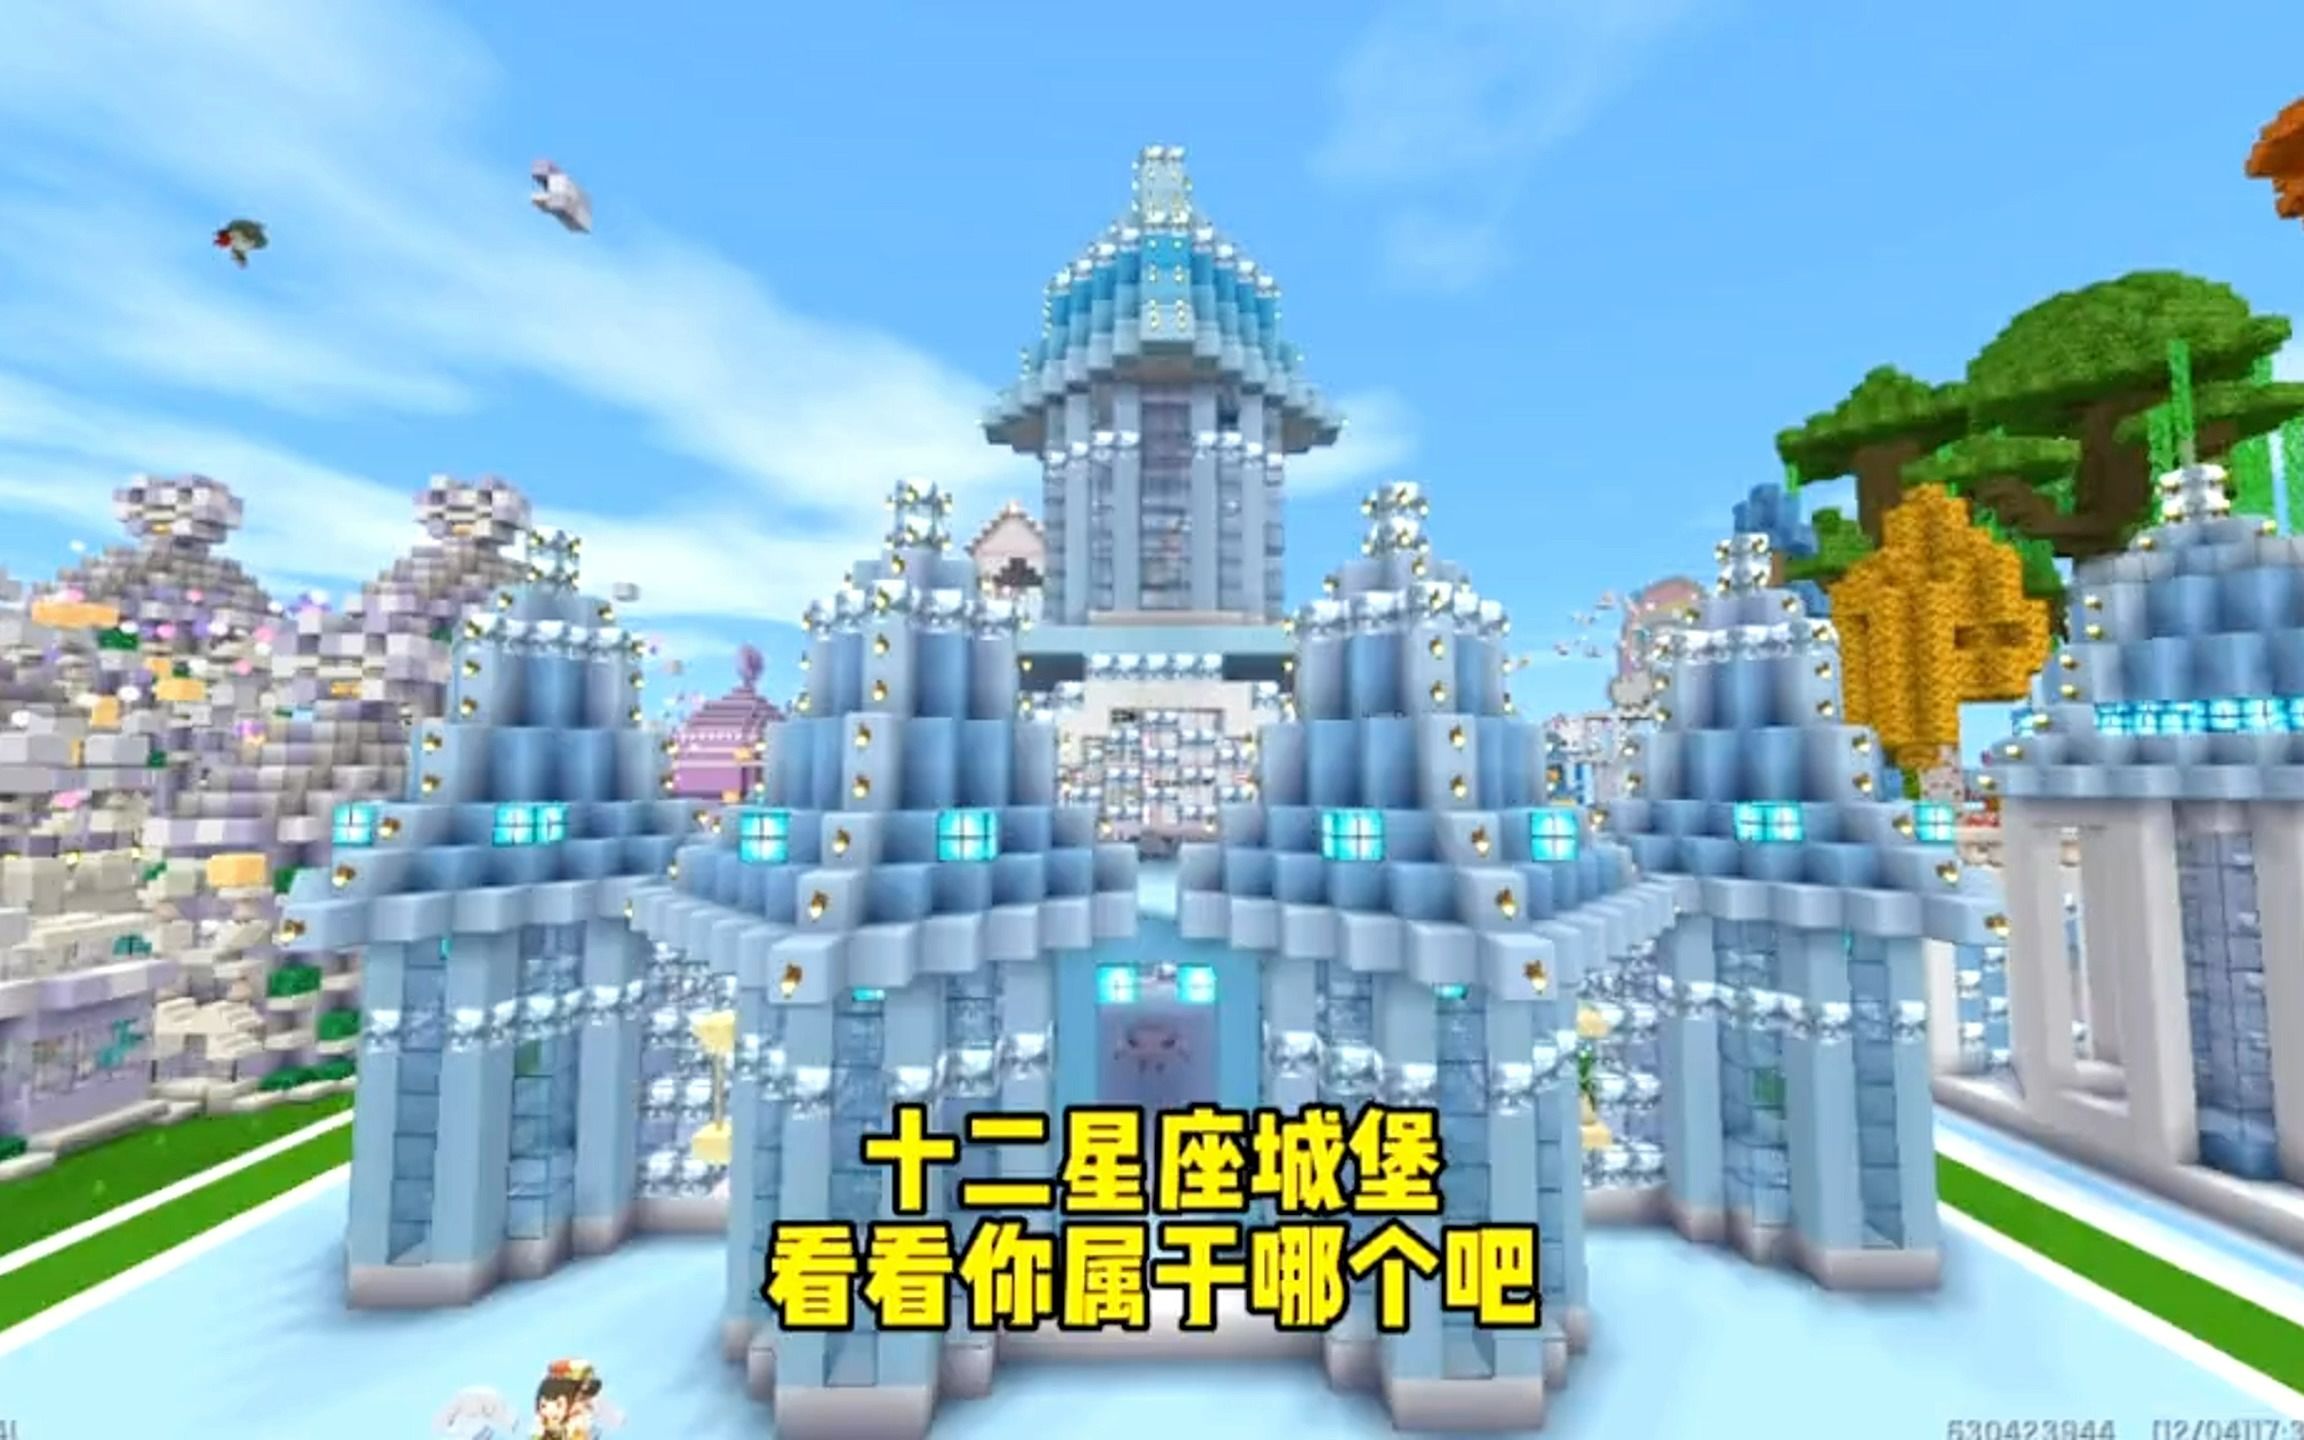 迷你世界:迷你世界十二星座城堡,看看你属于哪个吧?